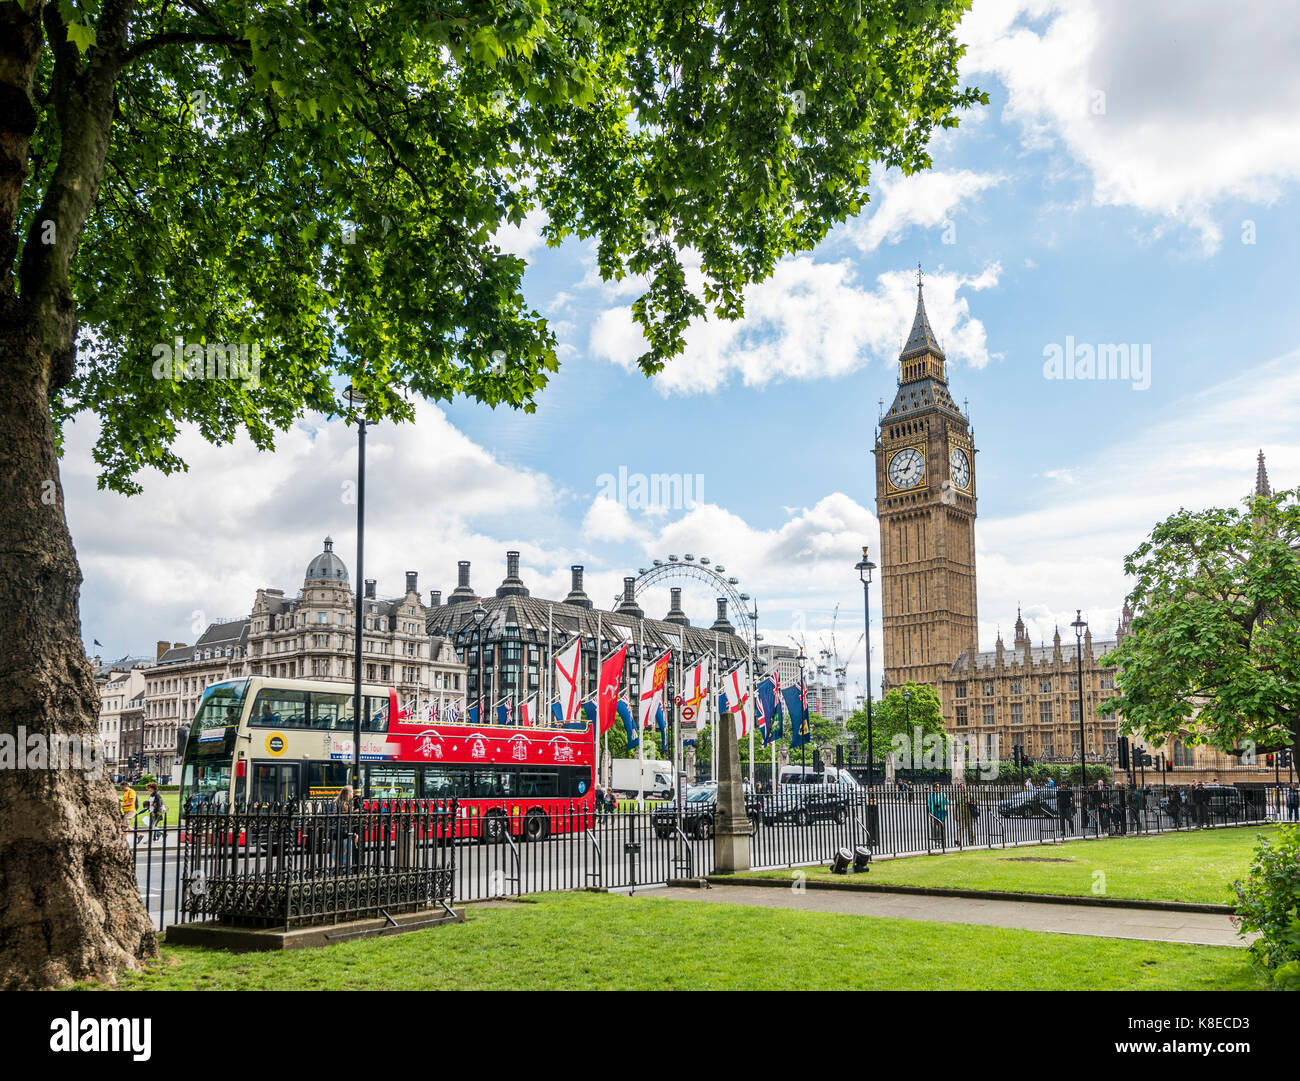 Palacio de Westminster, las casas del parlamento, el Big Ben, la ciudad de Westminster, Londres, Inglaterra, Gran Bretaña Foto de stock